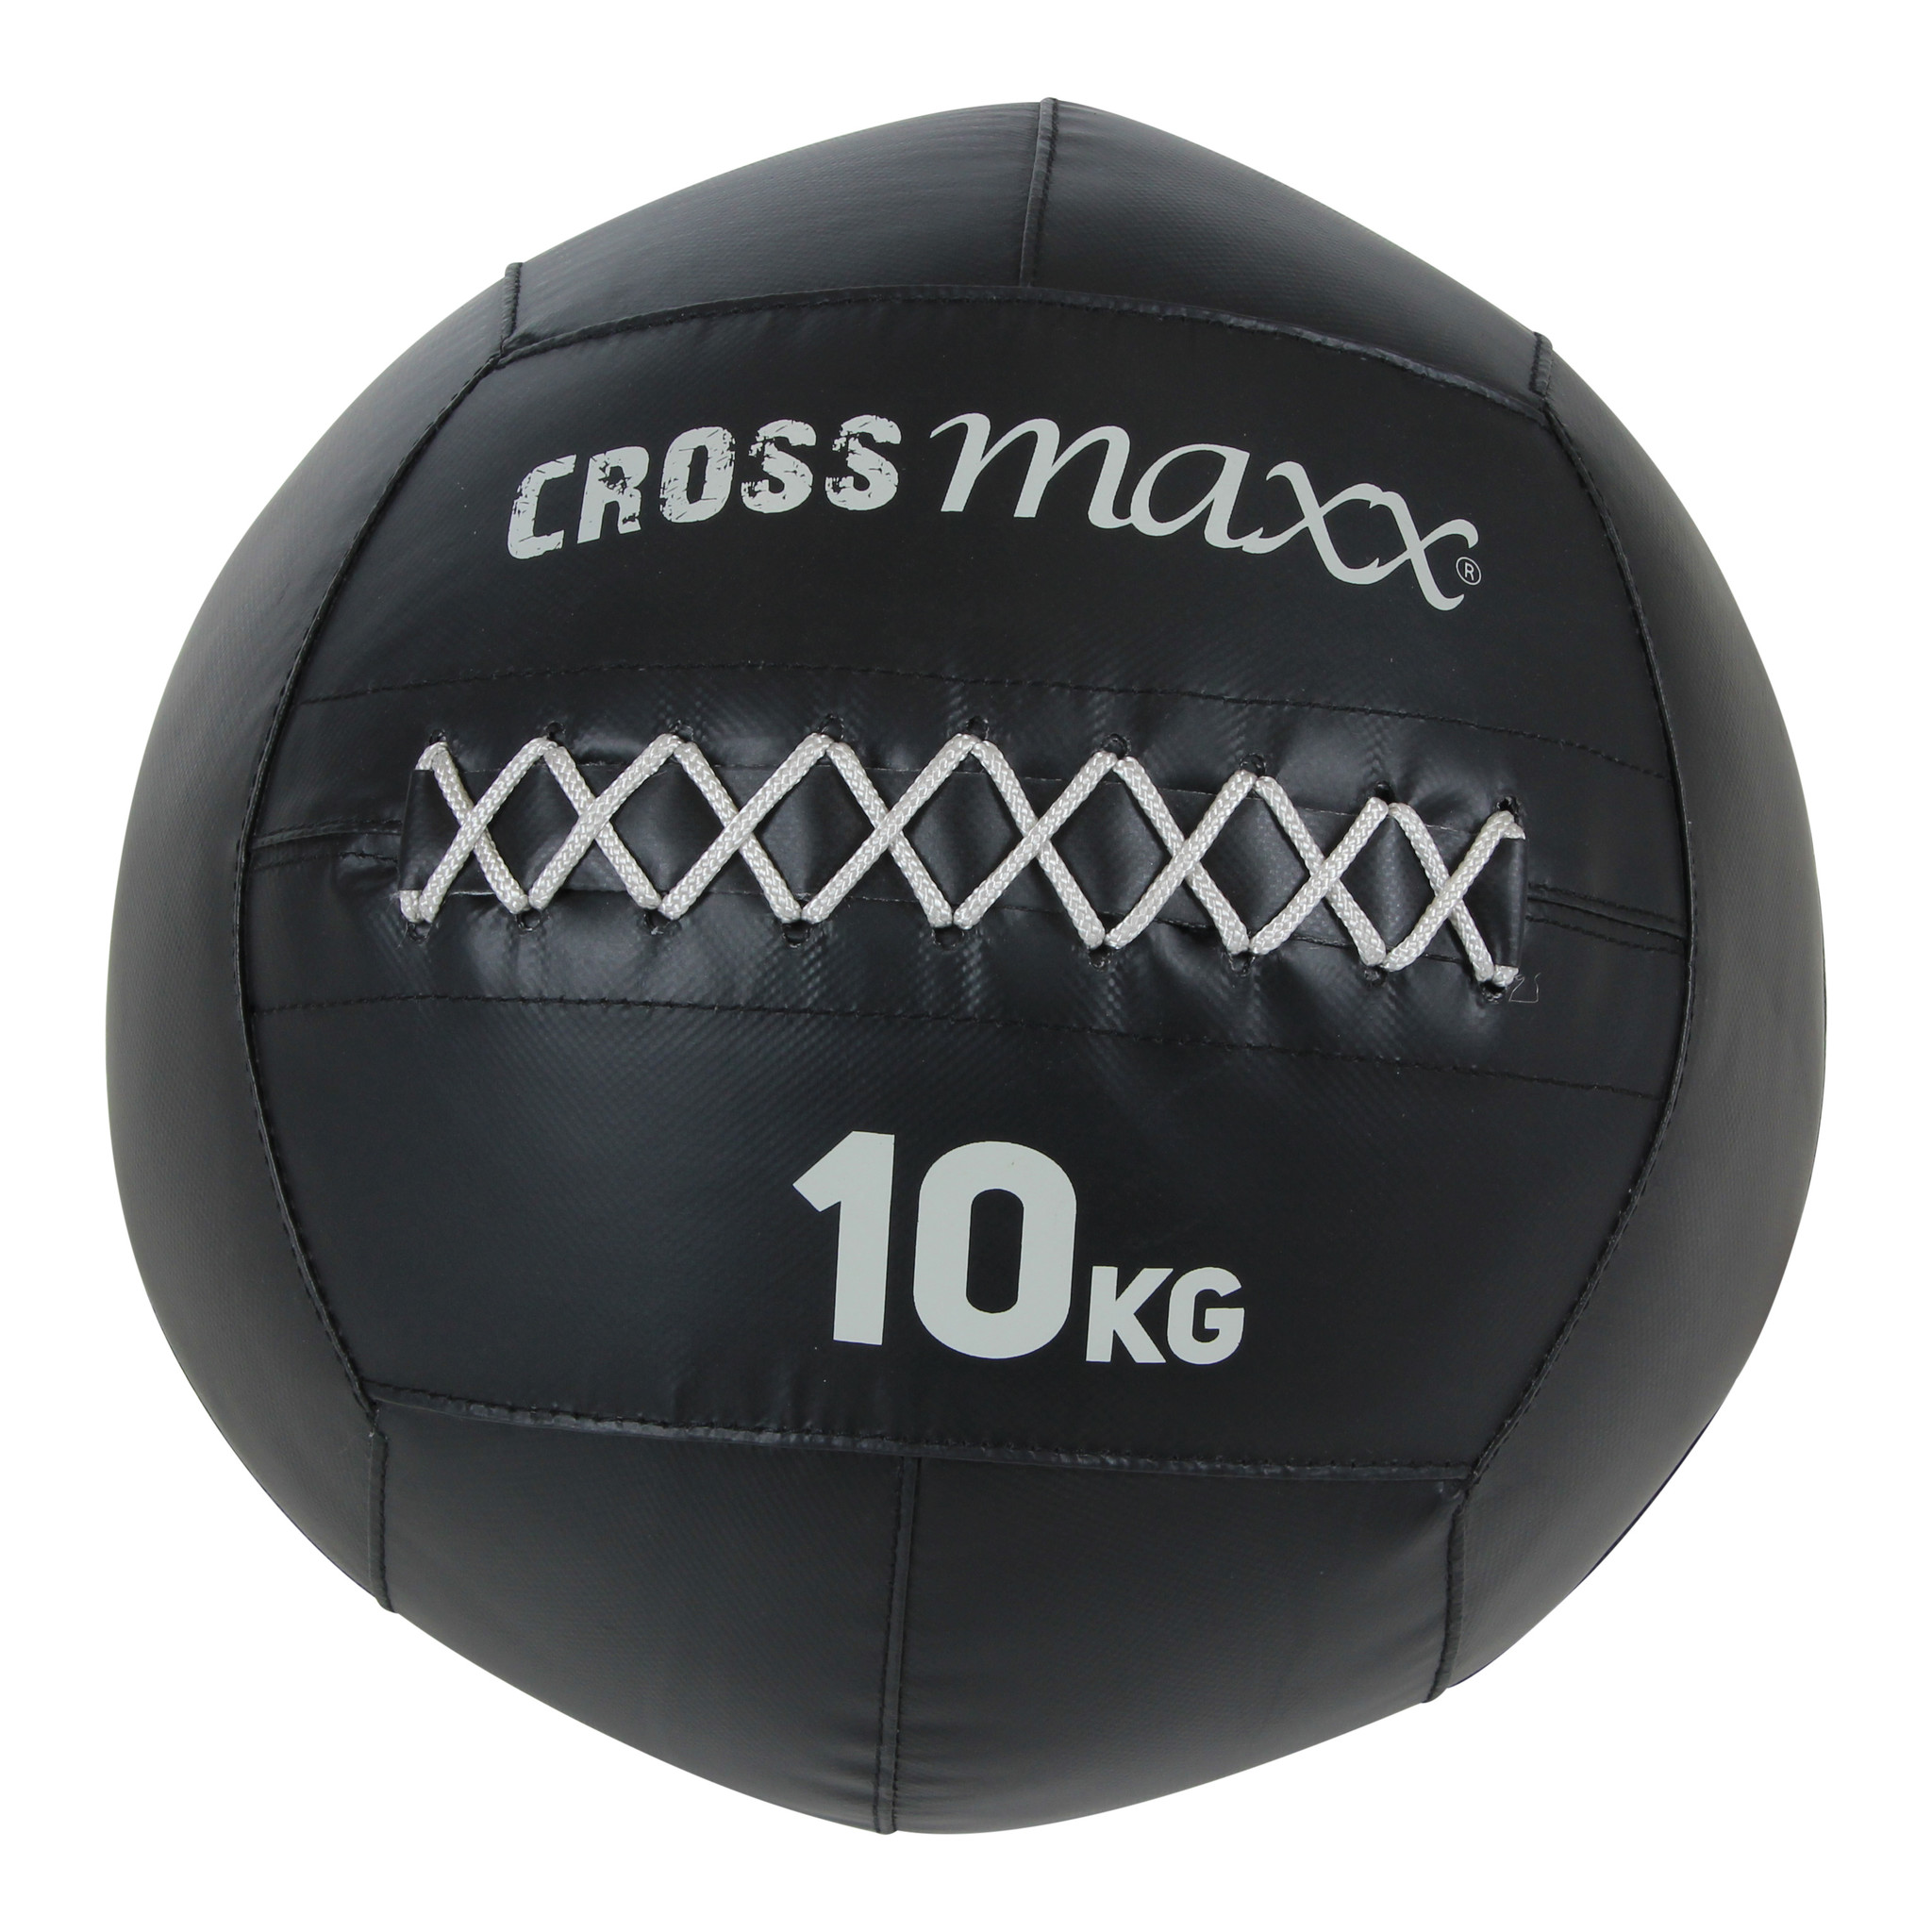 Brug Crossmaxx PRO Wall Ball 10 kg til en forbedret oplevelse